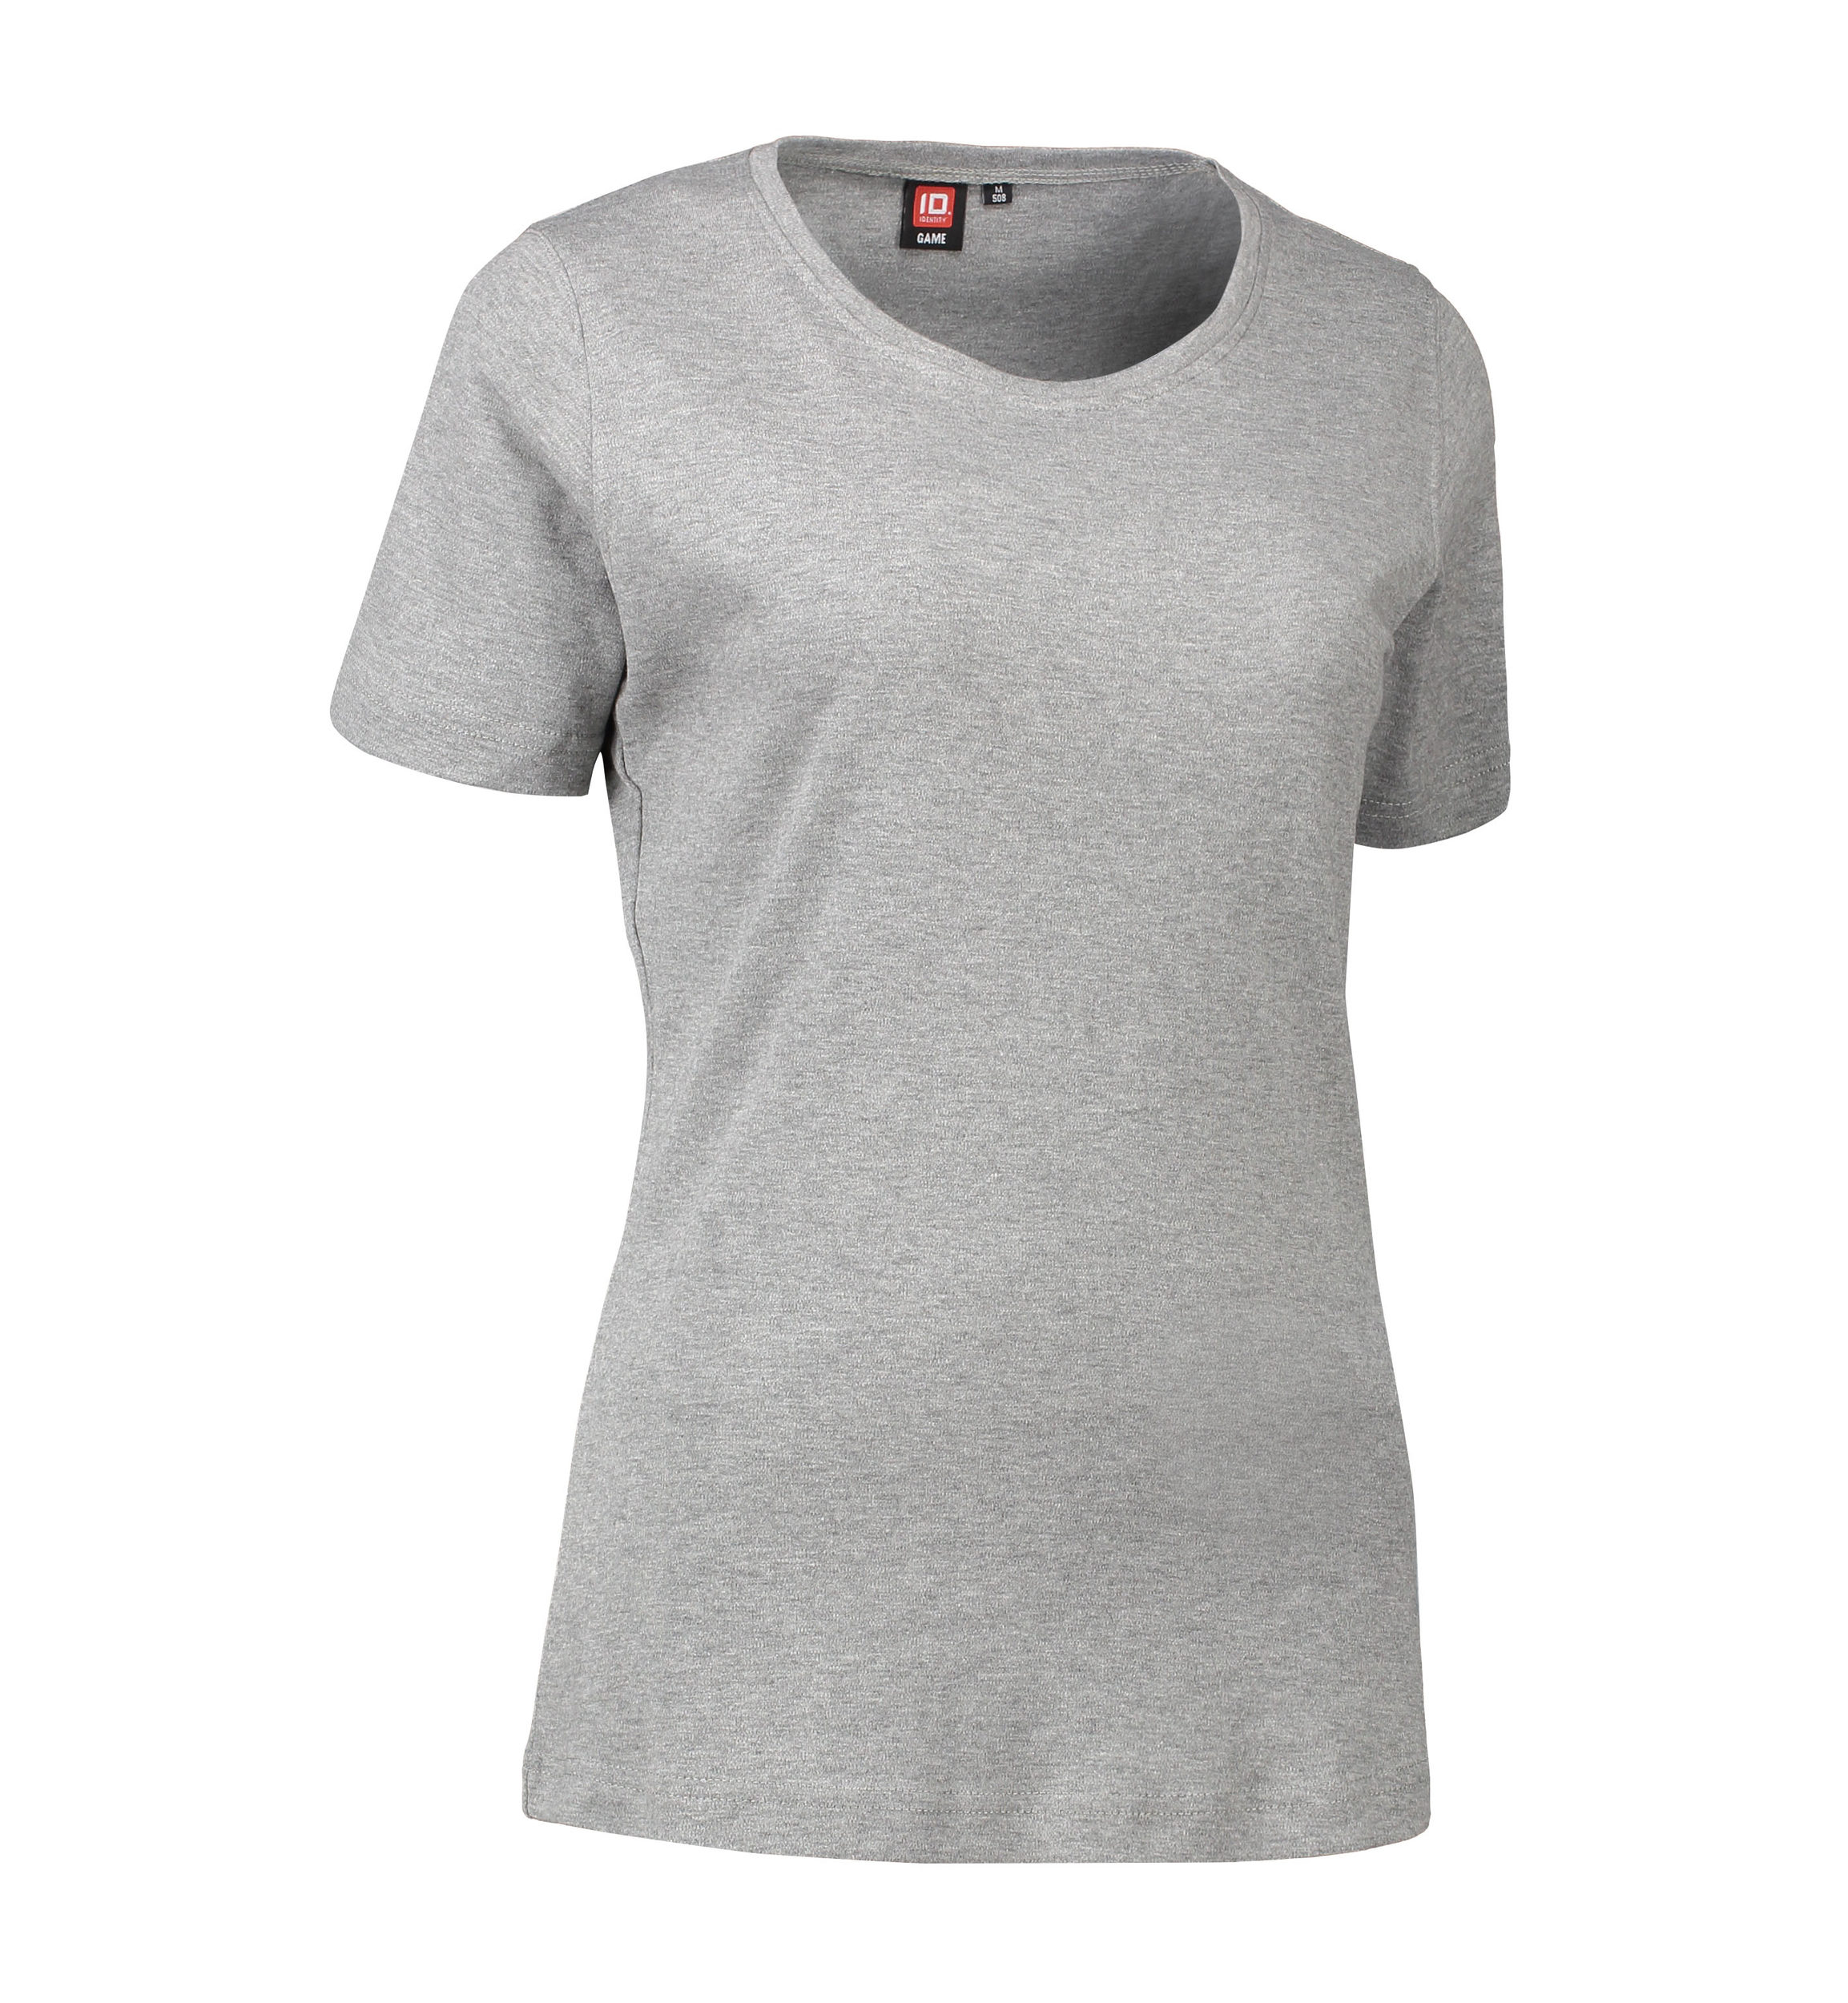 Billede af Dame t-shirt med rund hals i grå - L hos Sygeplejebutikken.dk